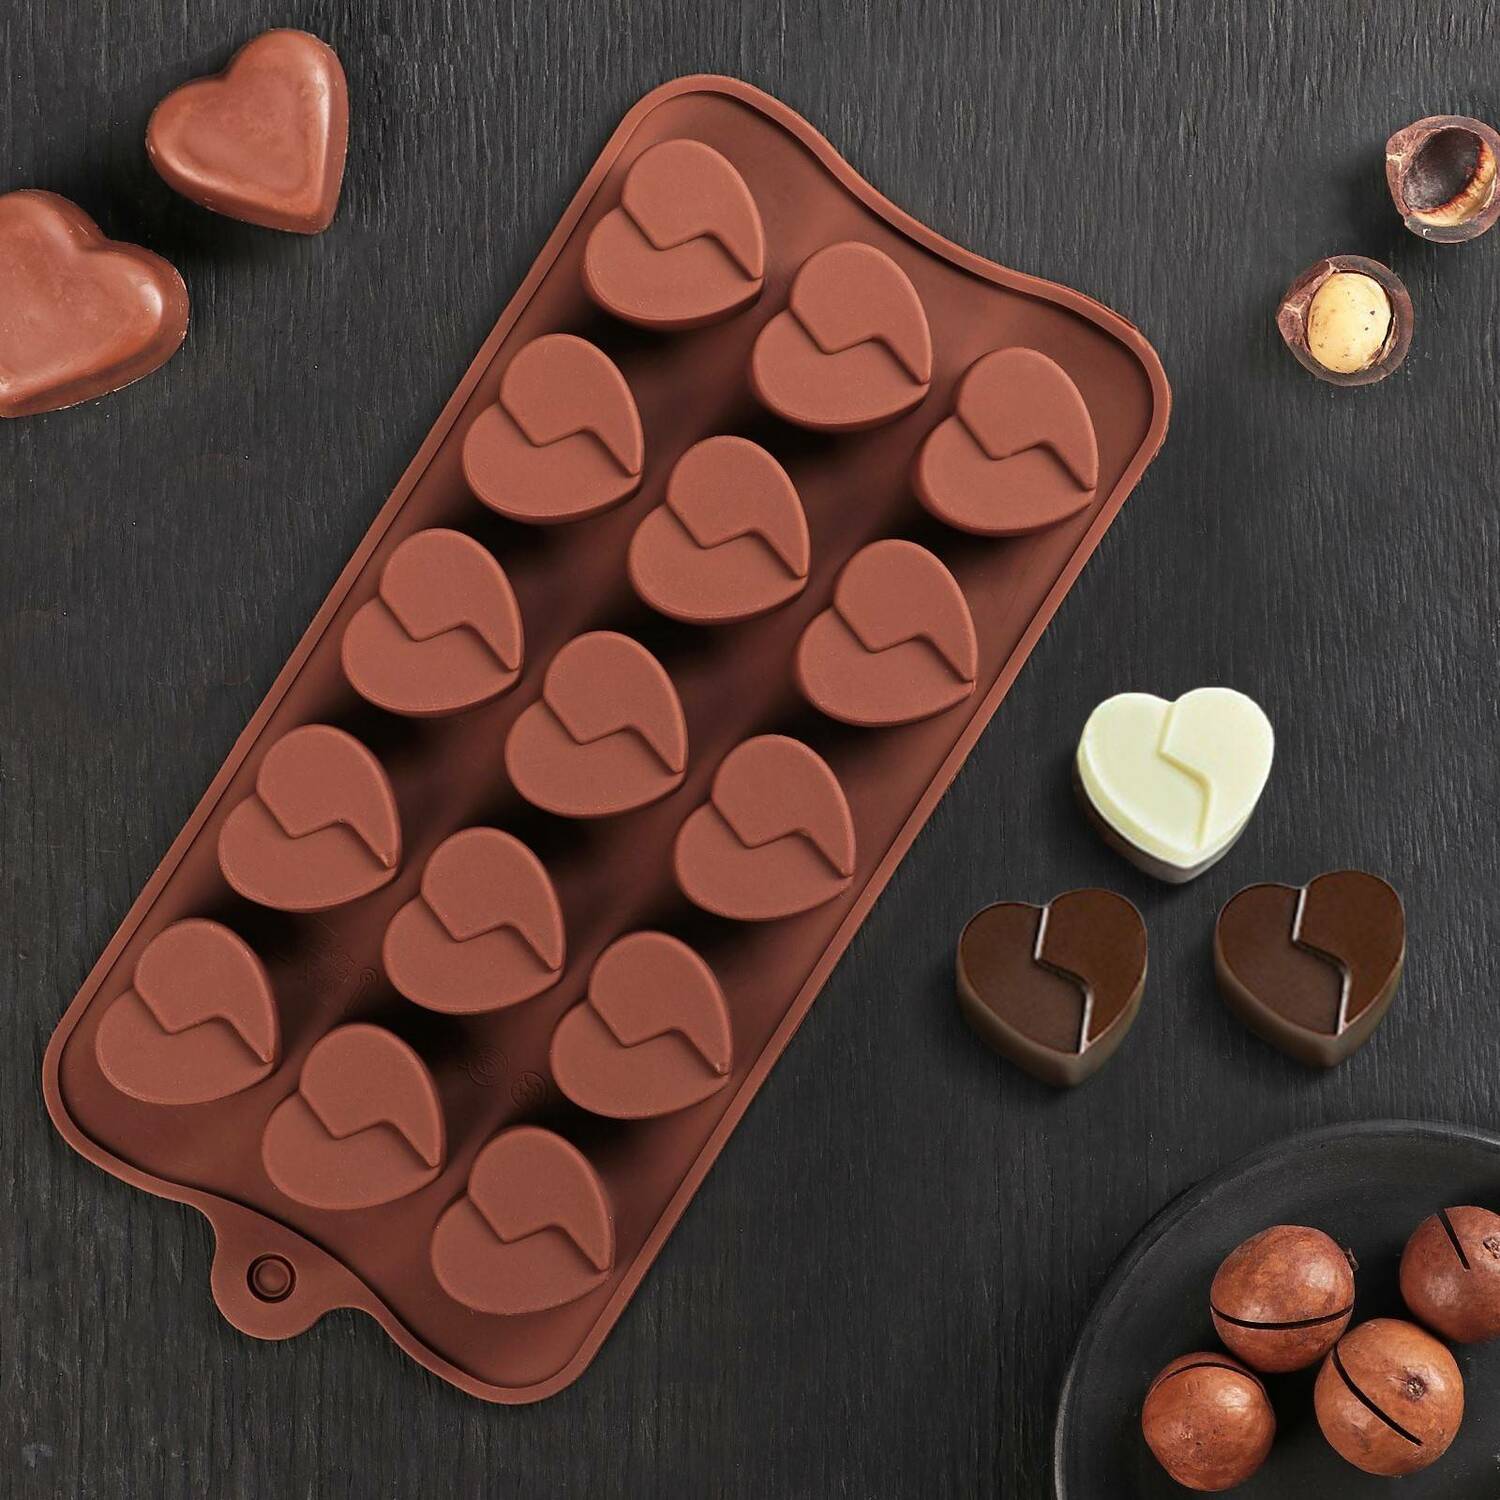 Форма для льда и шоколада «Сердце», 21×10 см, 15 ячеек, цвет шоколадный